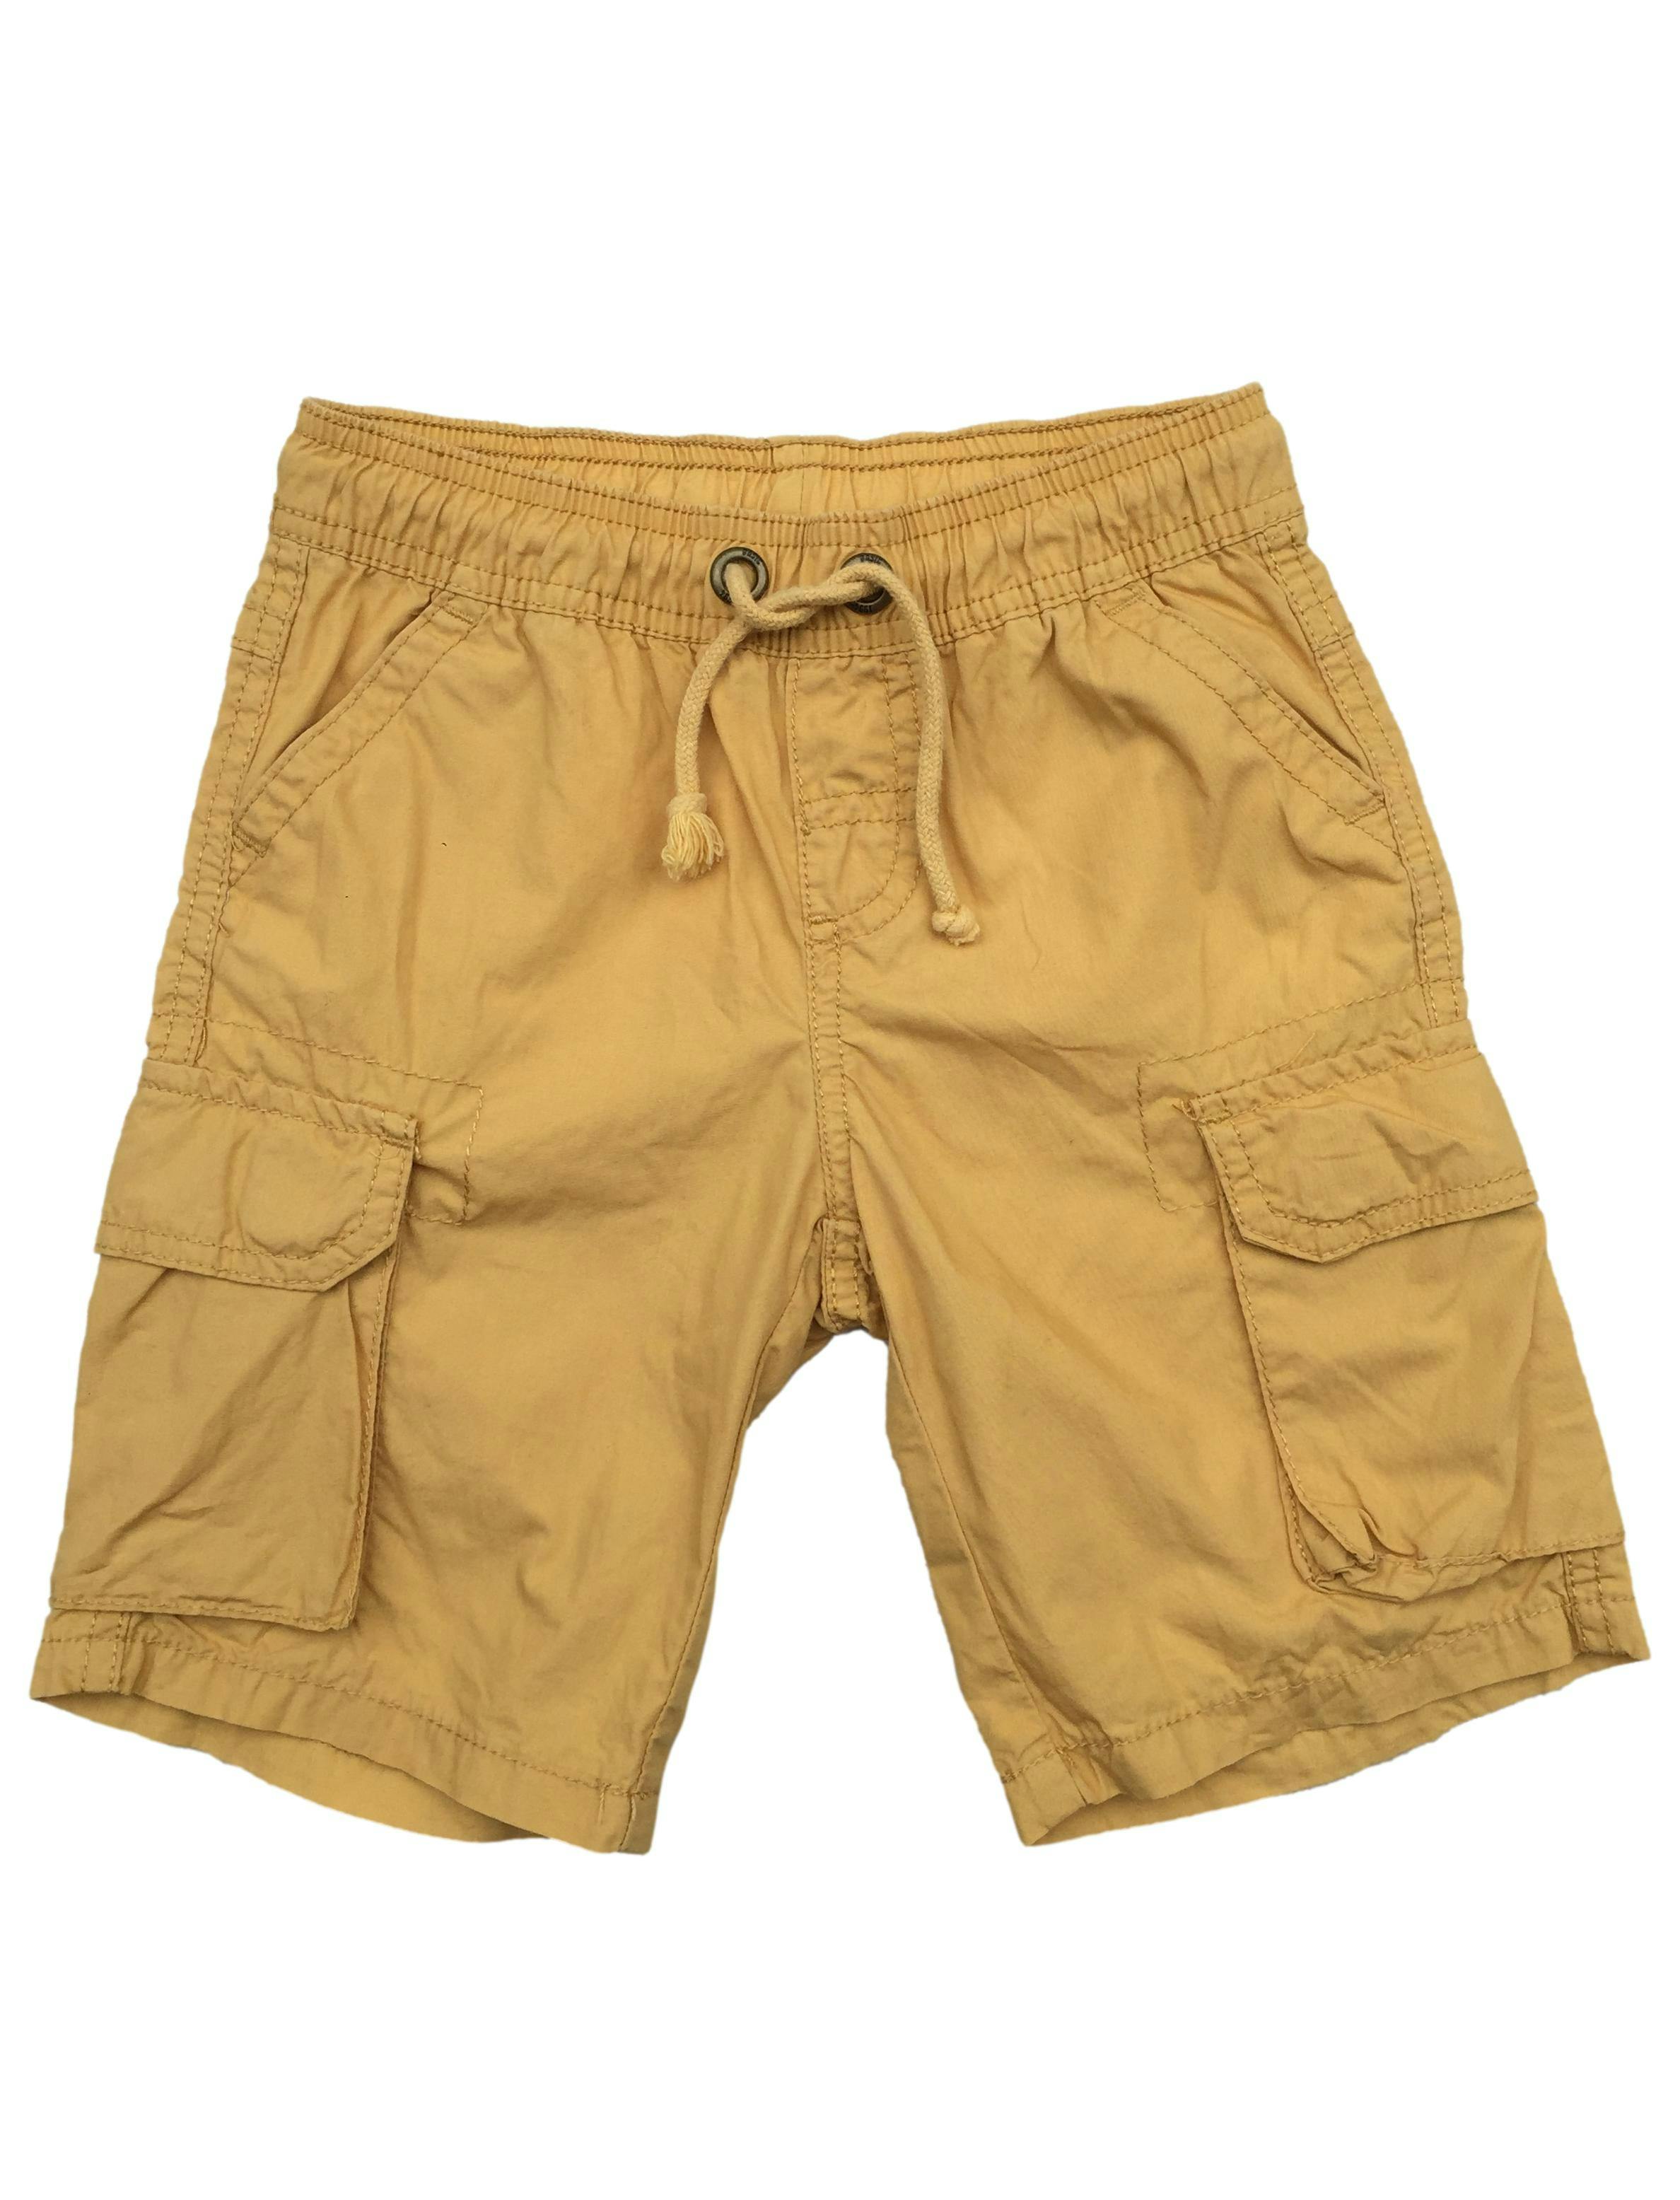 Short amarillo, pasador en la cintura y bolsillos laterales con pega pega.